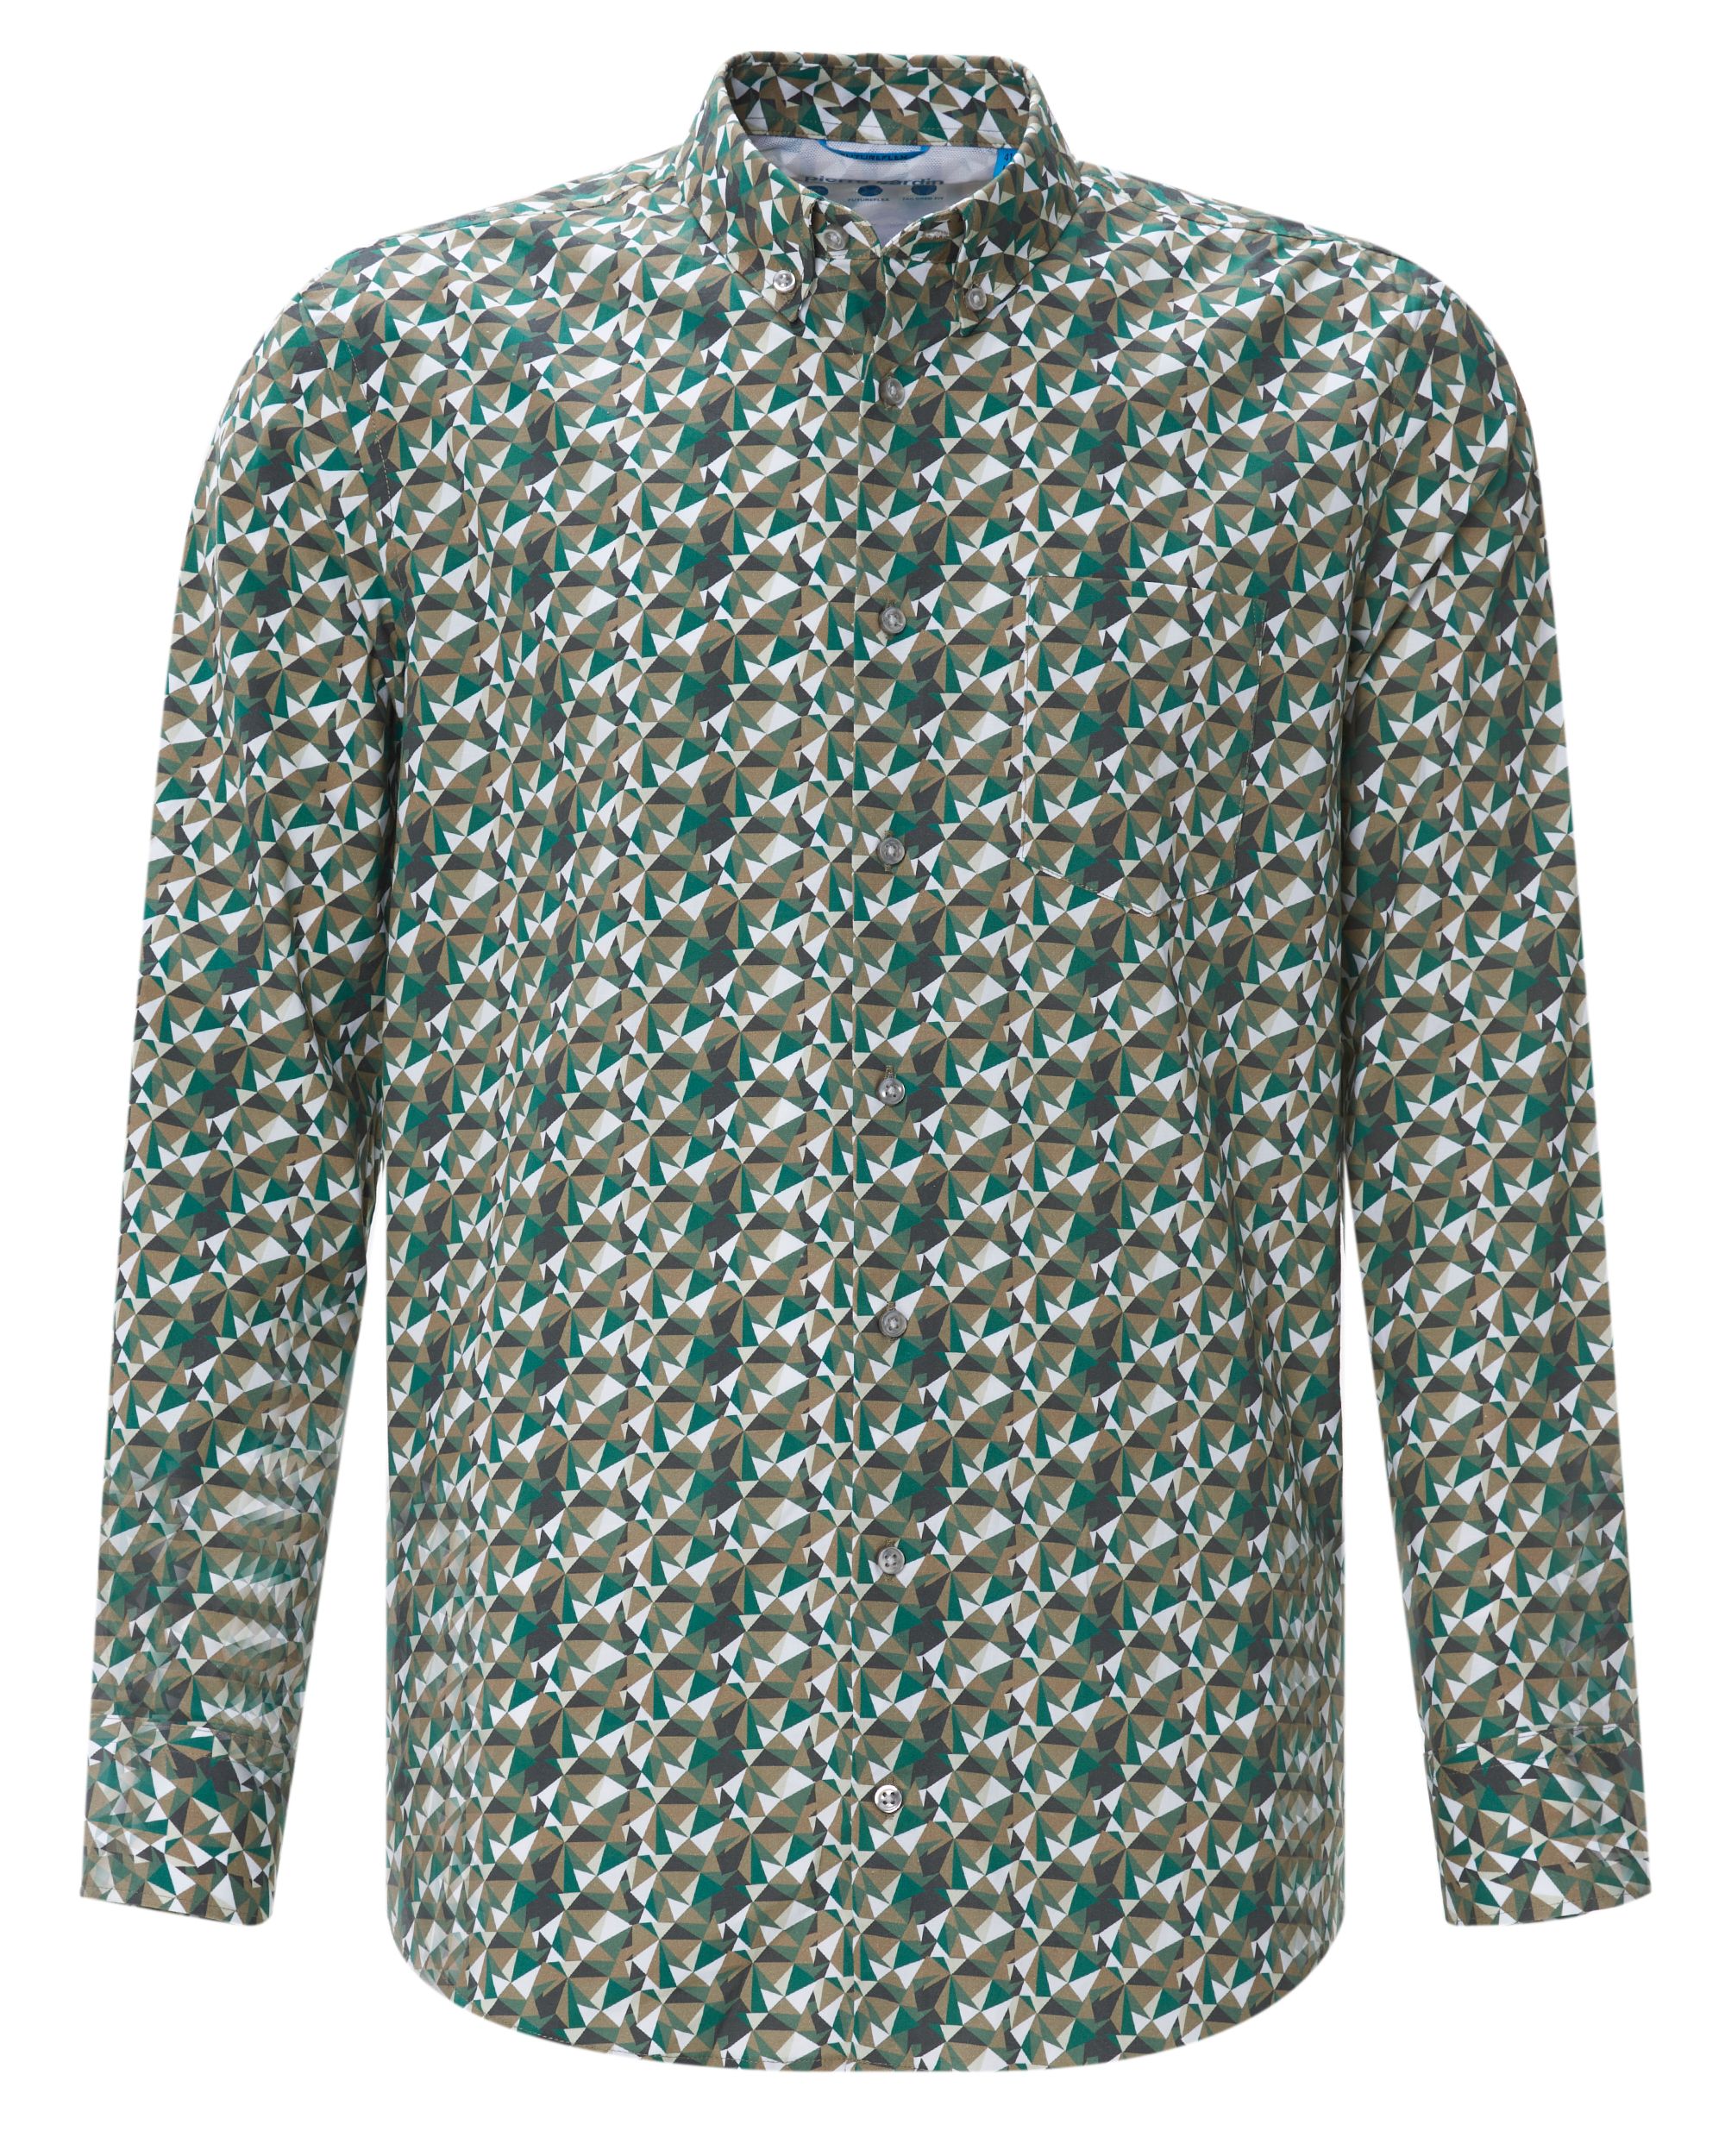 Pierre Cardin Overhemd LM | Shop nu - Only for Men